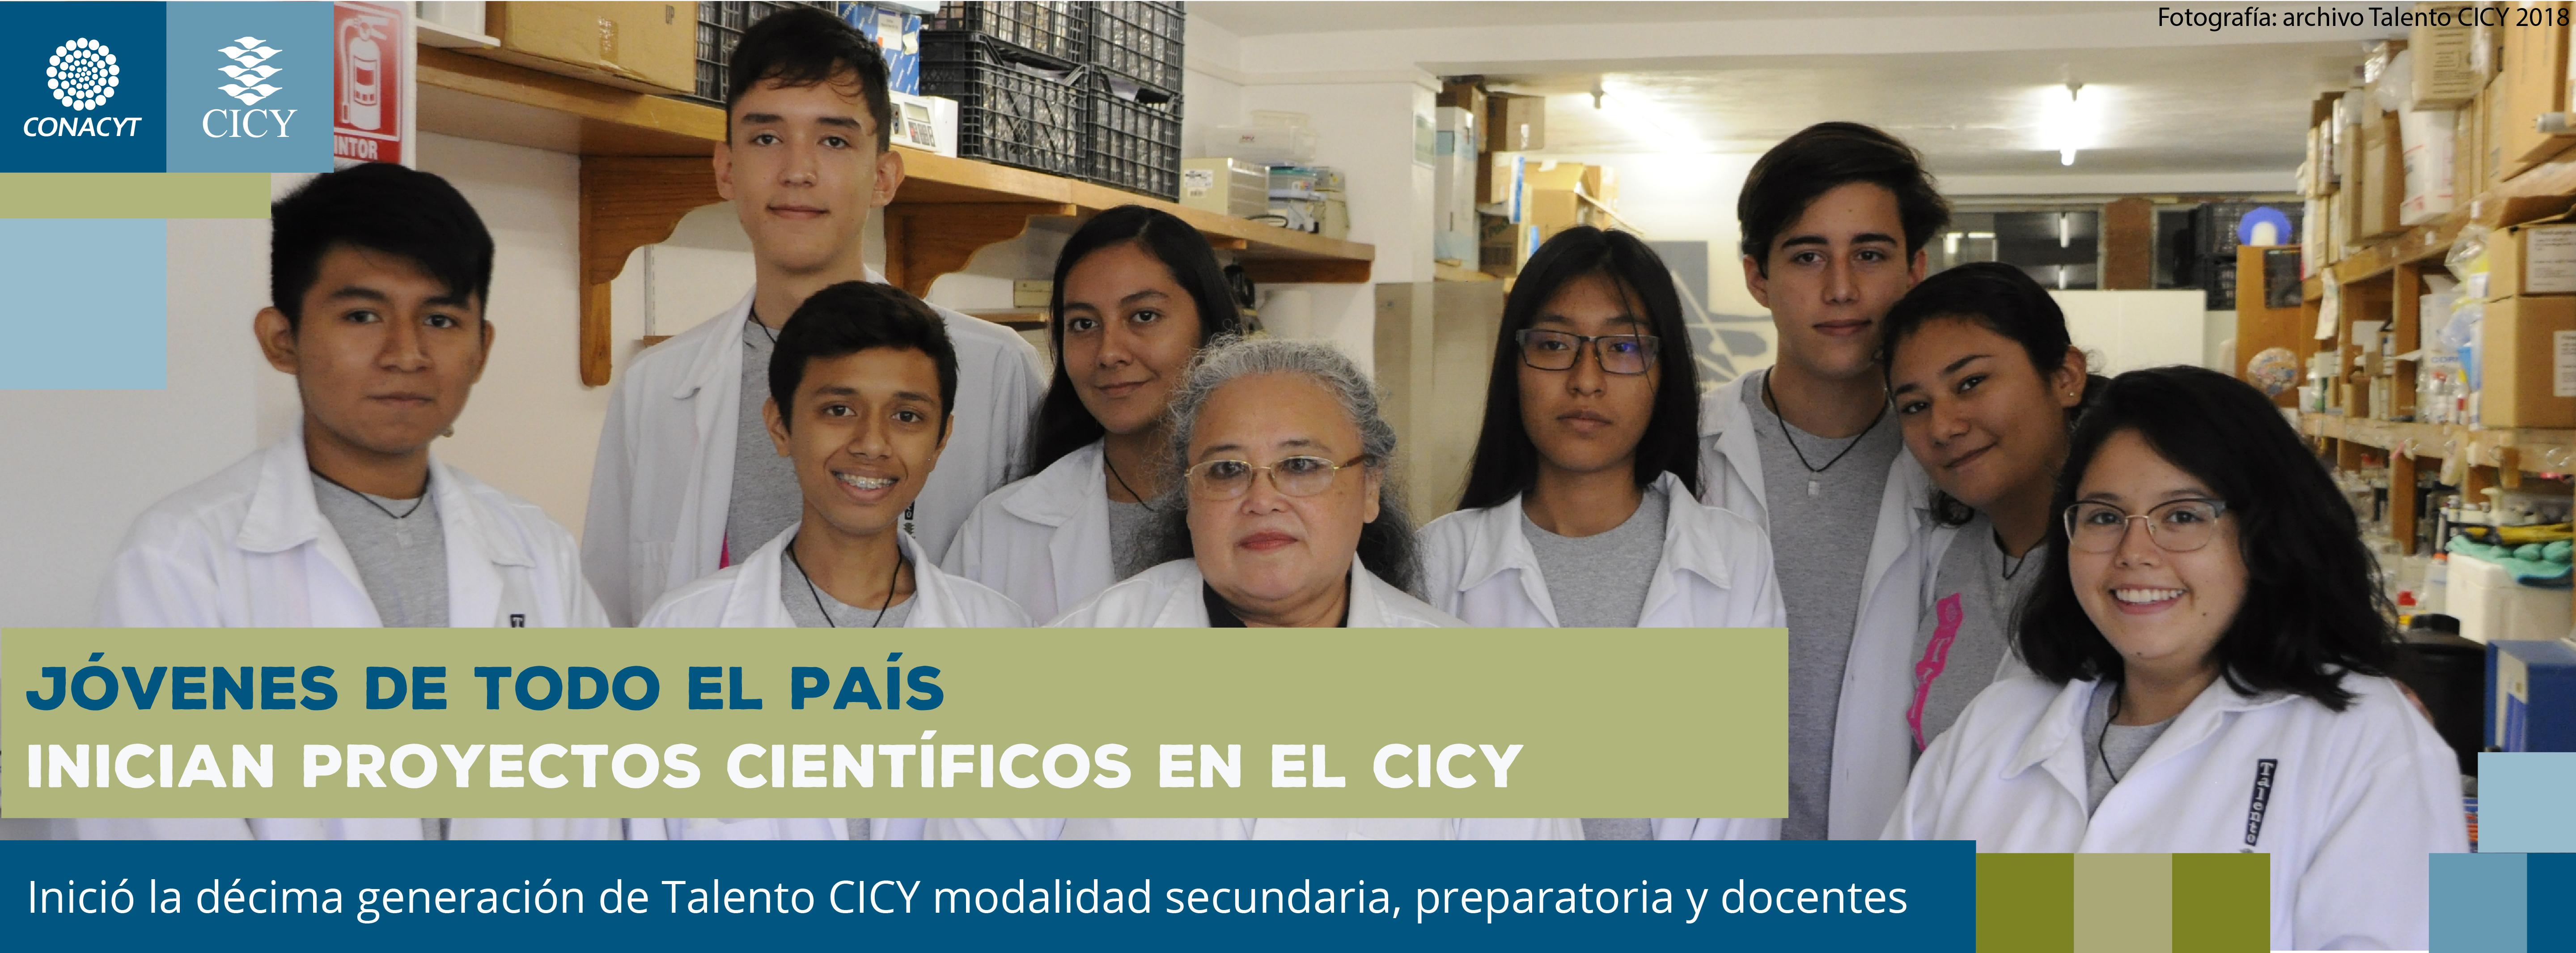 Jóvenes de todo el país inician proyectos científicos en el CICY